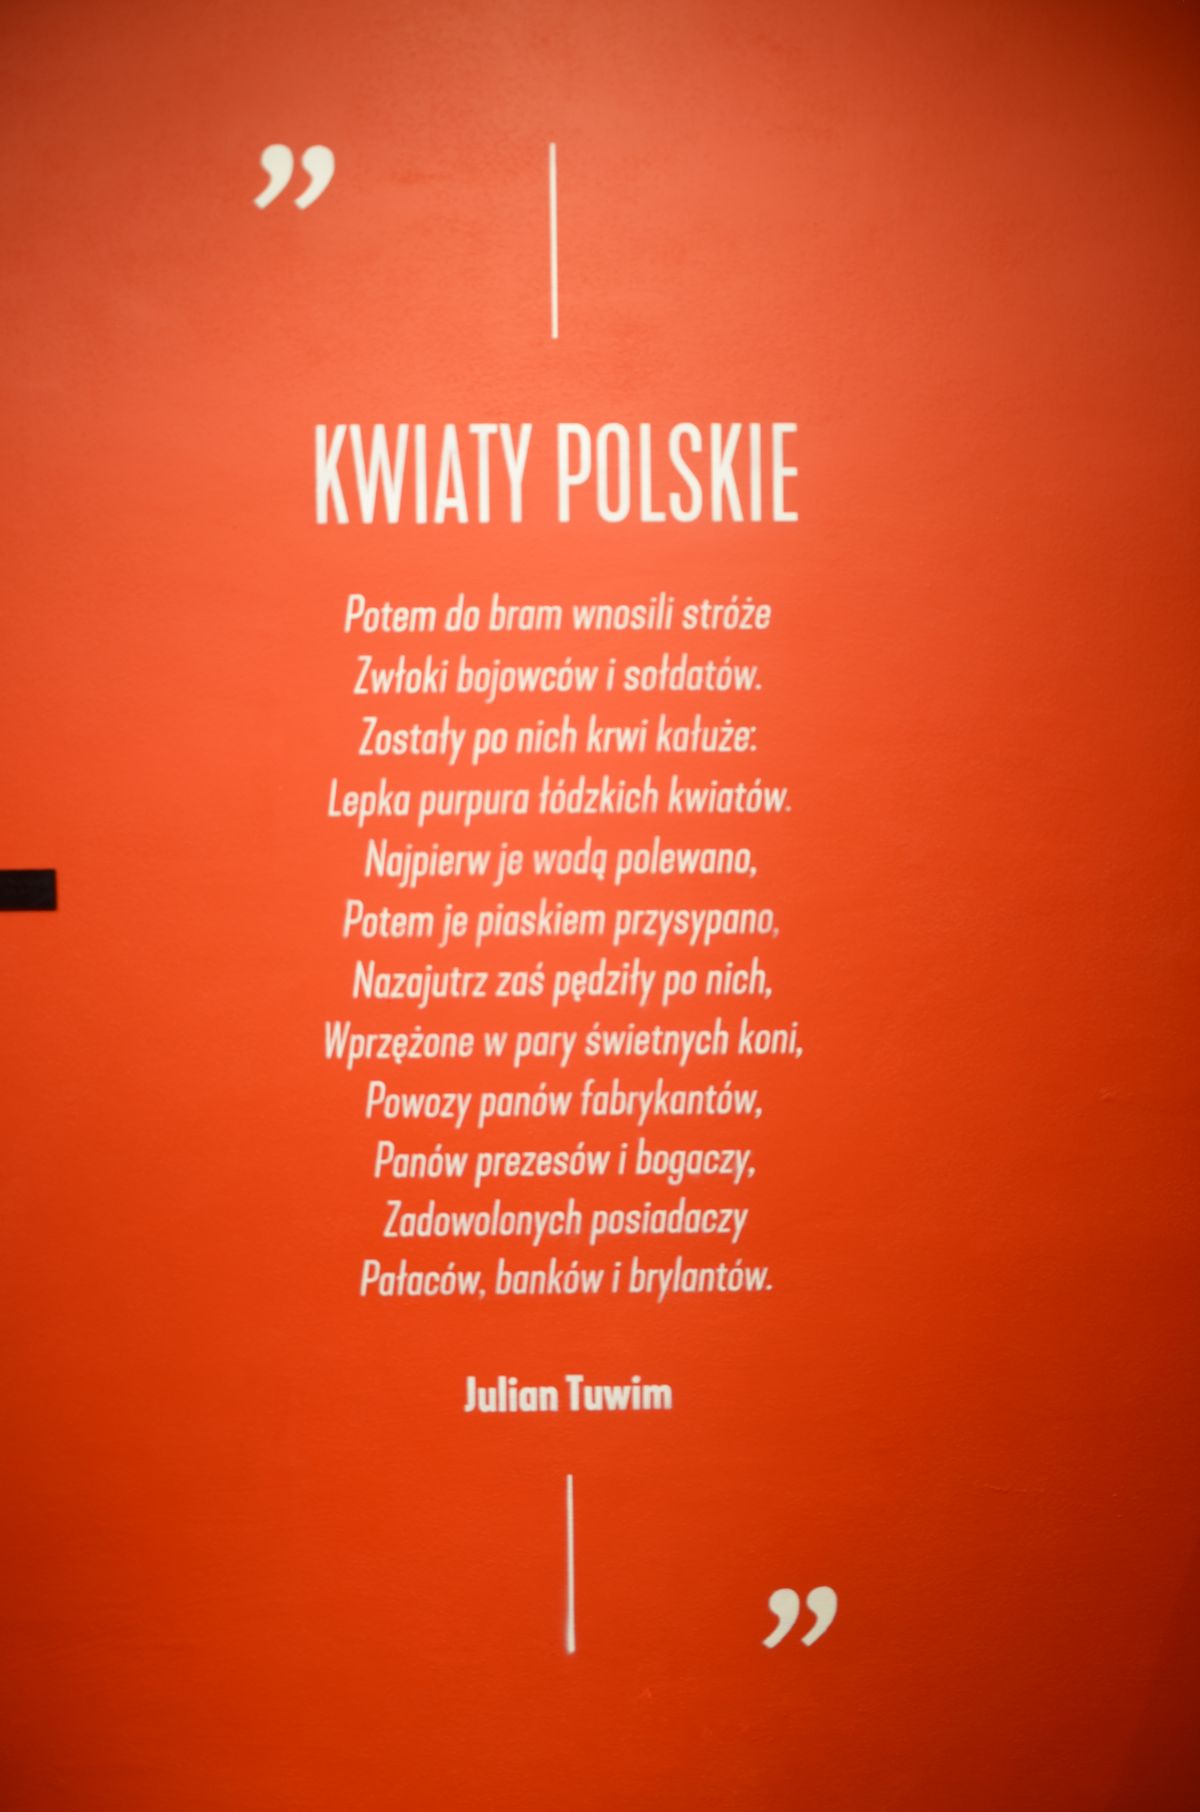 wiersz Tuwima "Kwiaty polskie"